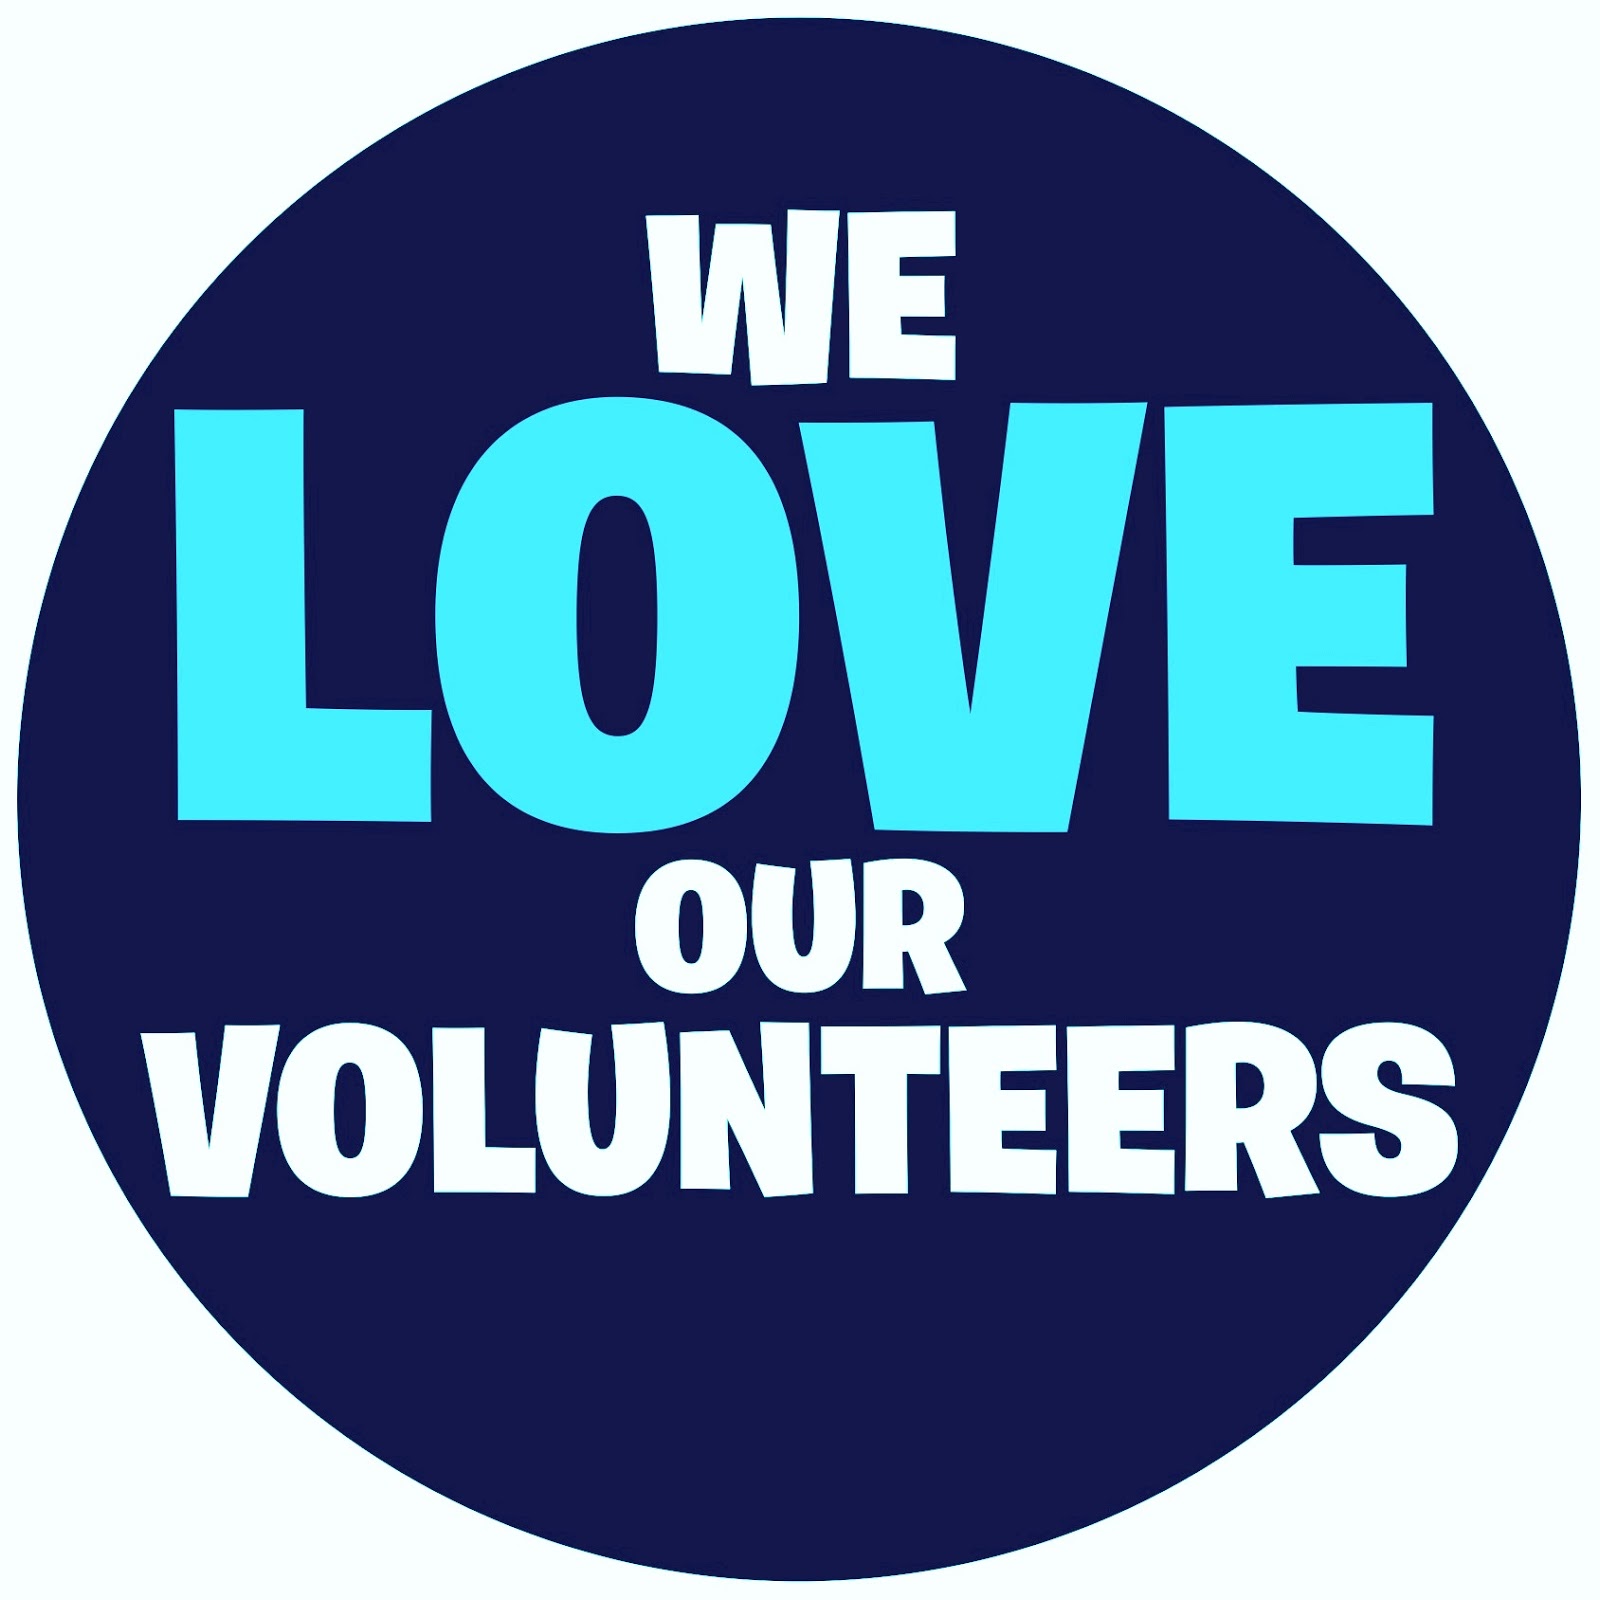 Volunteer Heart Png Image Clipart